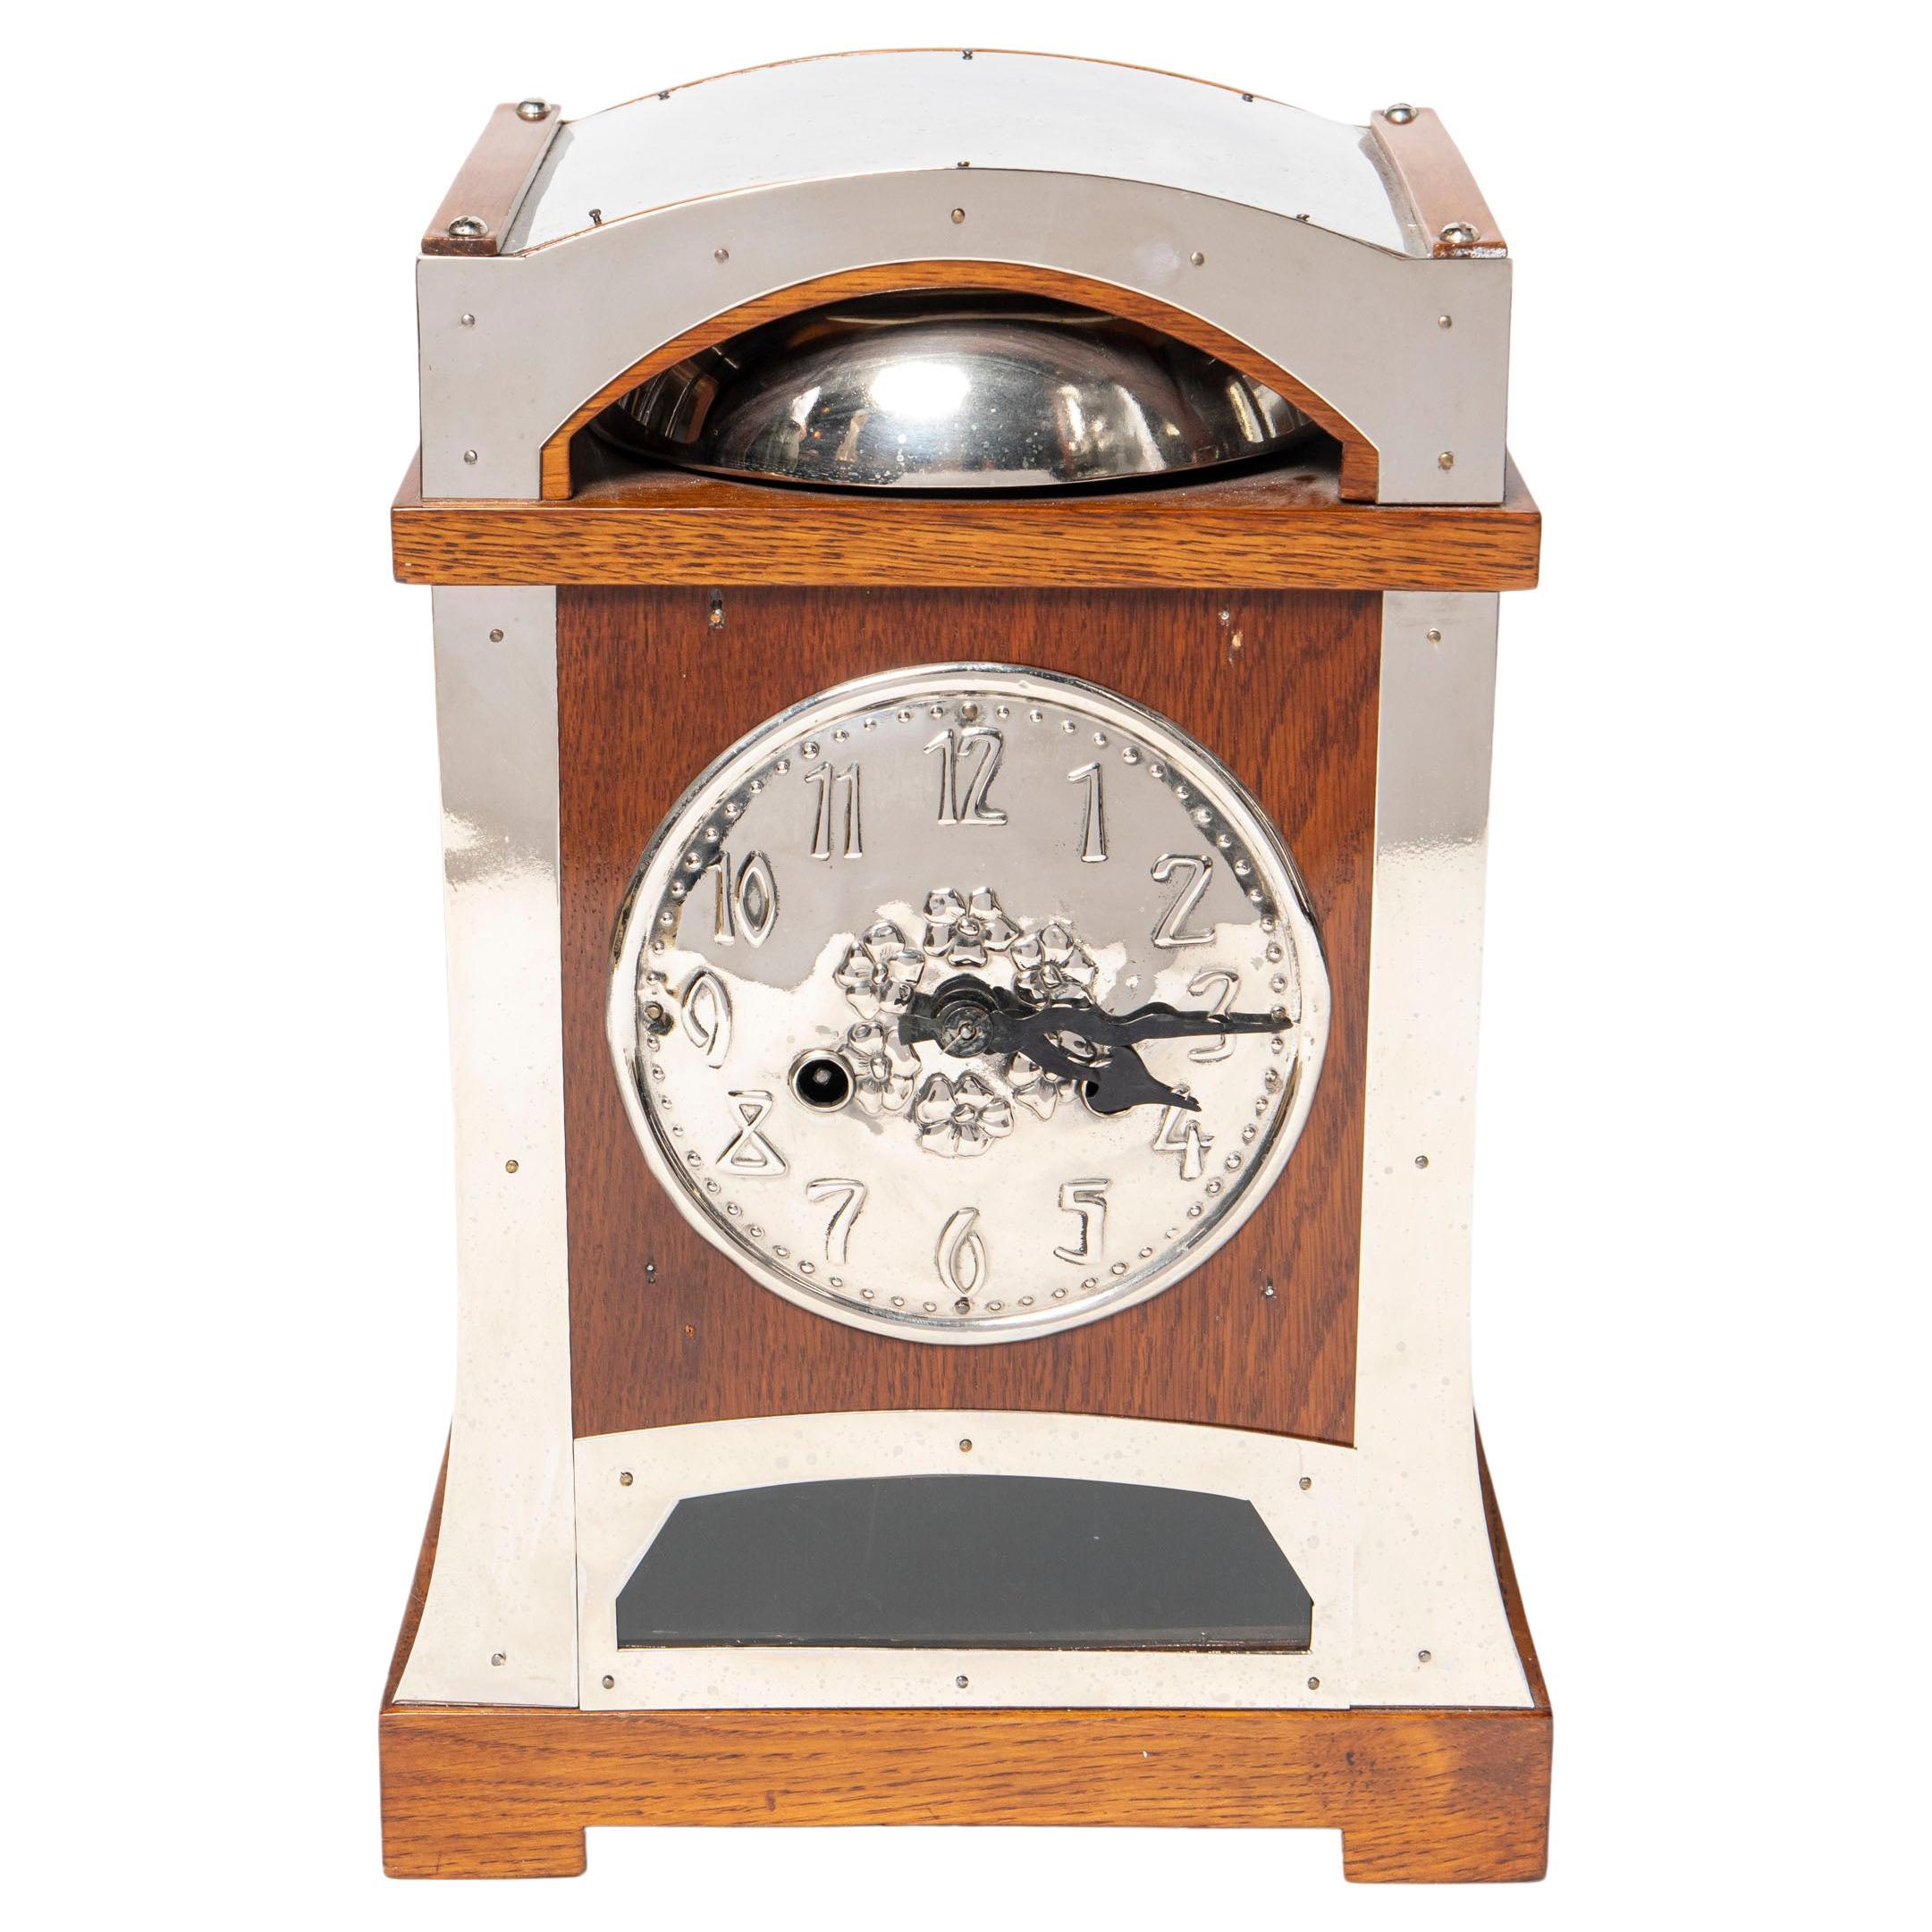 Horloge de table en bois et chrome, période Art nouveau, Espagne, début du 20e siècle